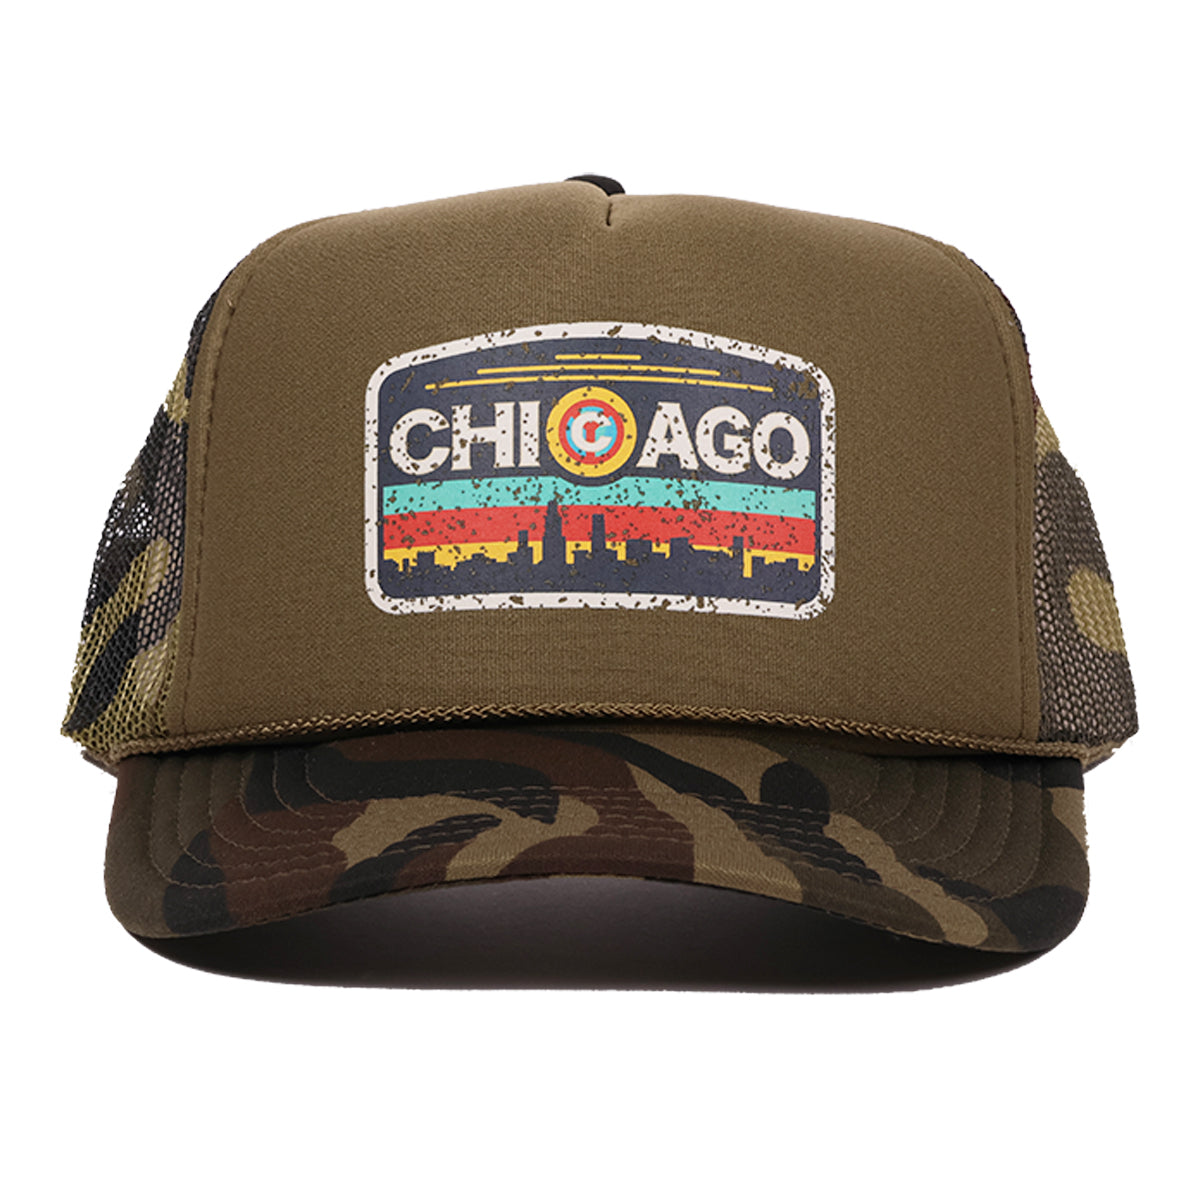 Chicago Surfer Trucker Hat (Army)